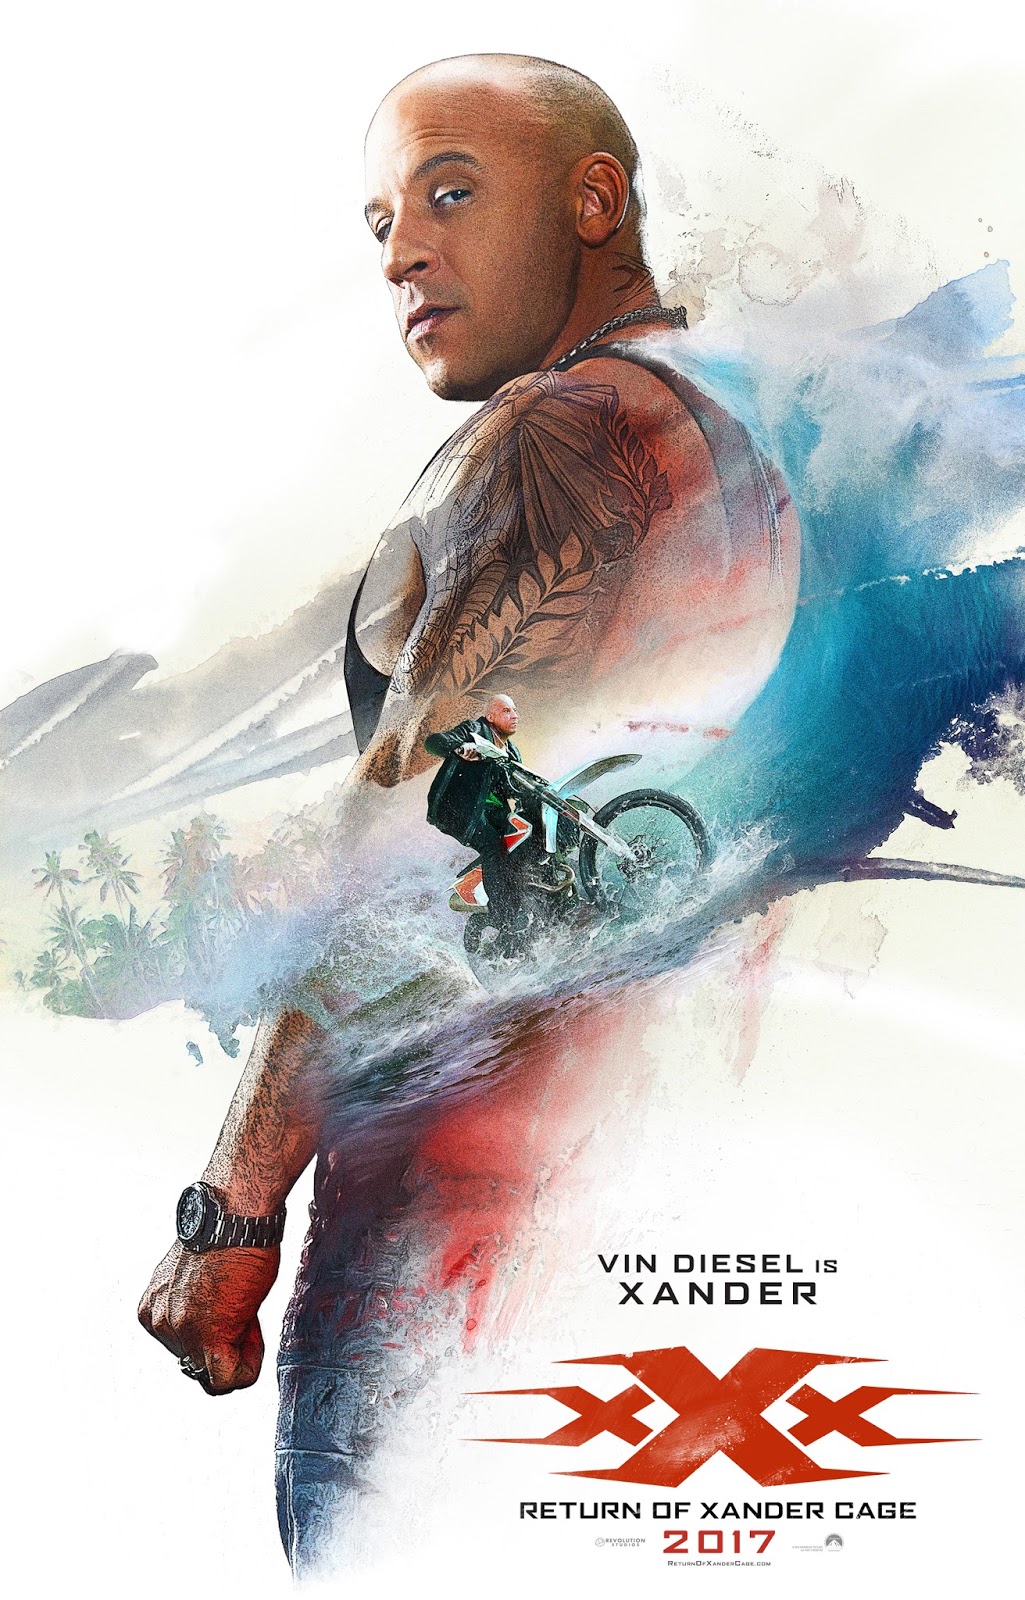 ตัวอย่างหนังใหม่ - xXx: Return Of Xander Cage (XxX : ทลายแผนยึดโลก) ตัวอย่างที่ 2 ซับไทย poster1